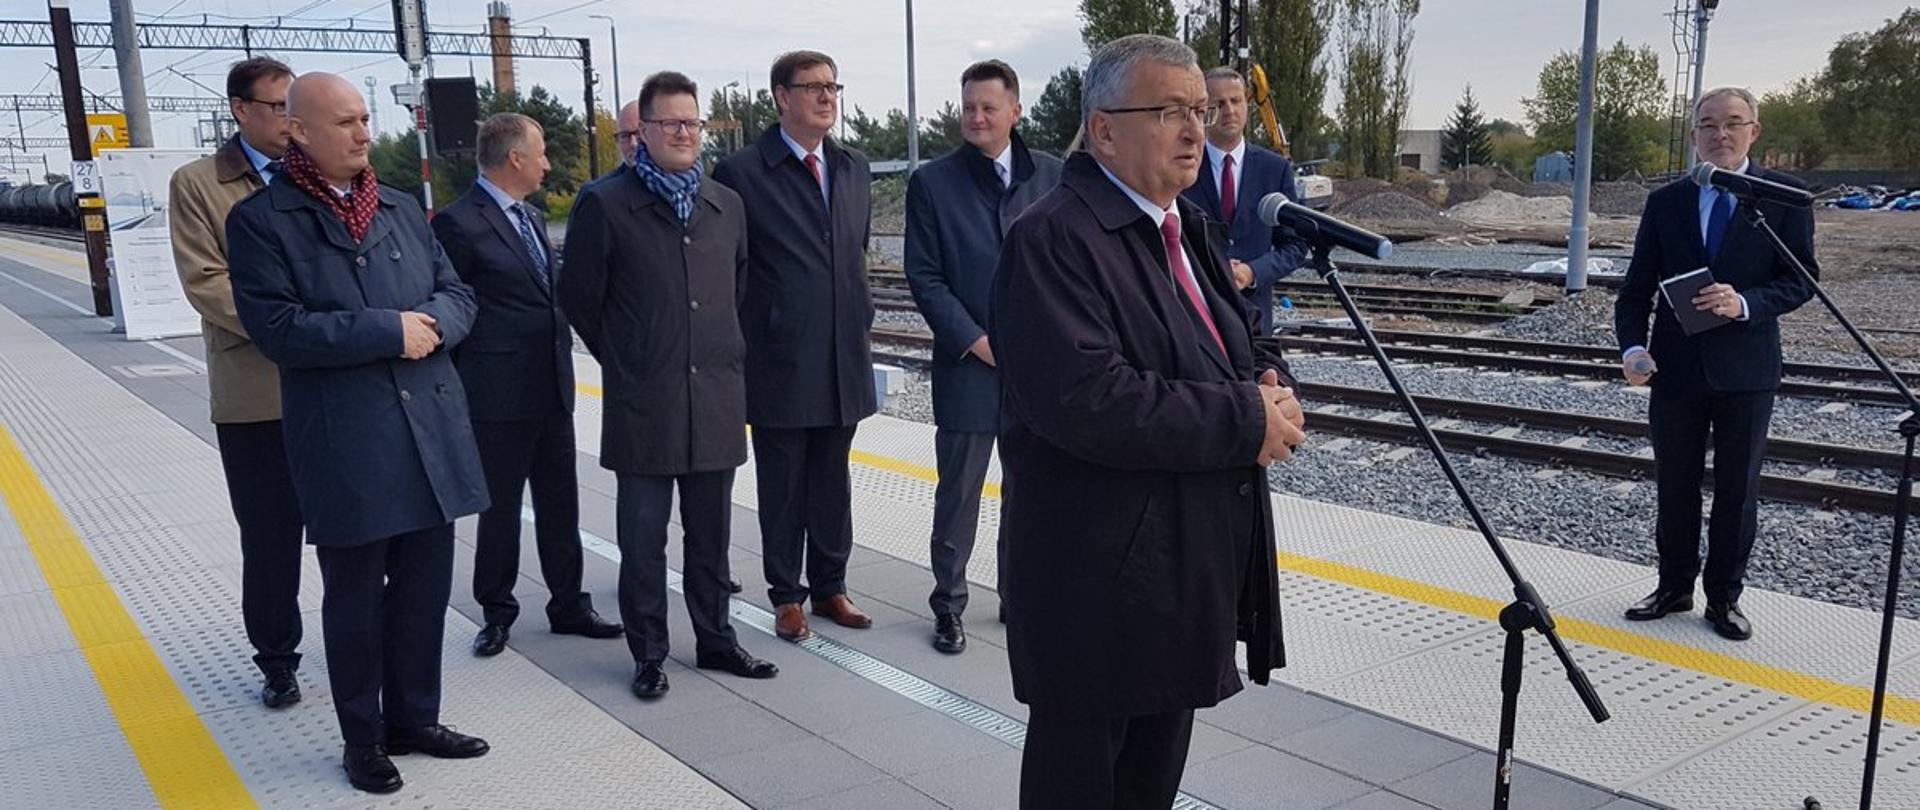 W Poznaniu i okolicach widać już efekty modernizacji polskiej kolei - powiedział minister infrastruktury A. Adamczyk